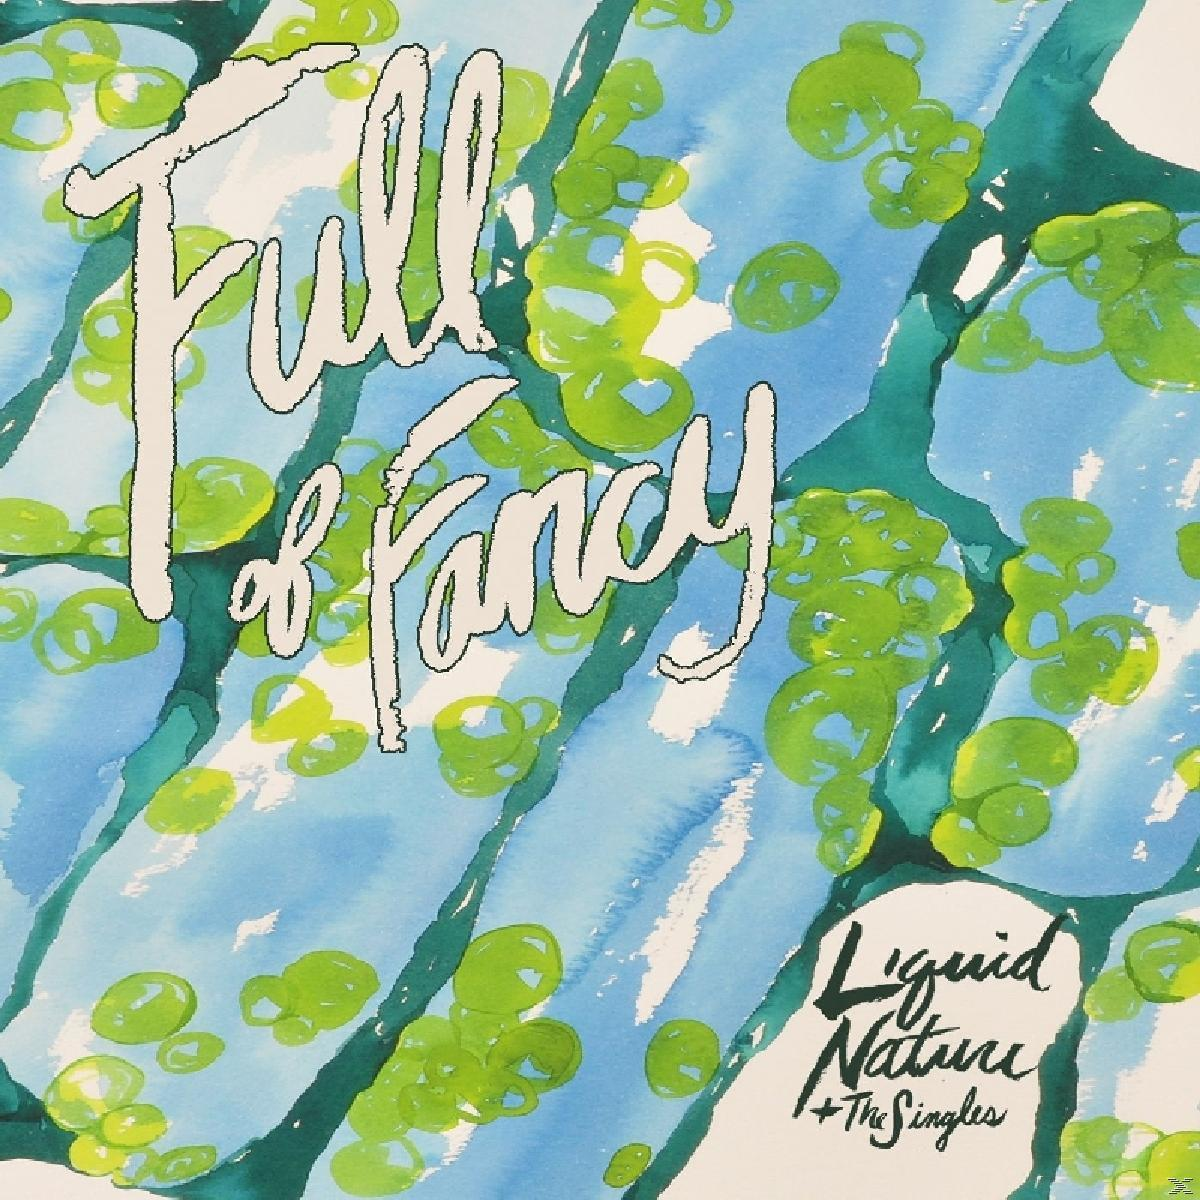 Of Nature Liquid - - Full (CD) Fancy